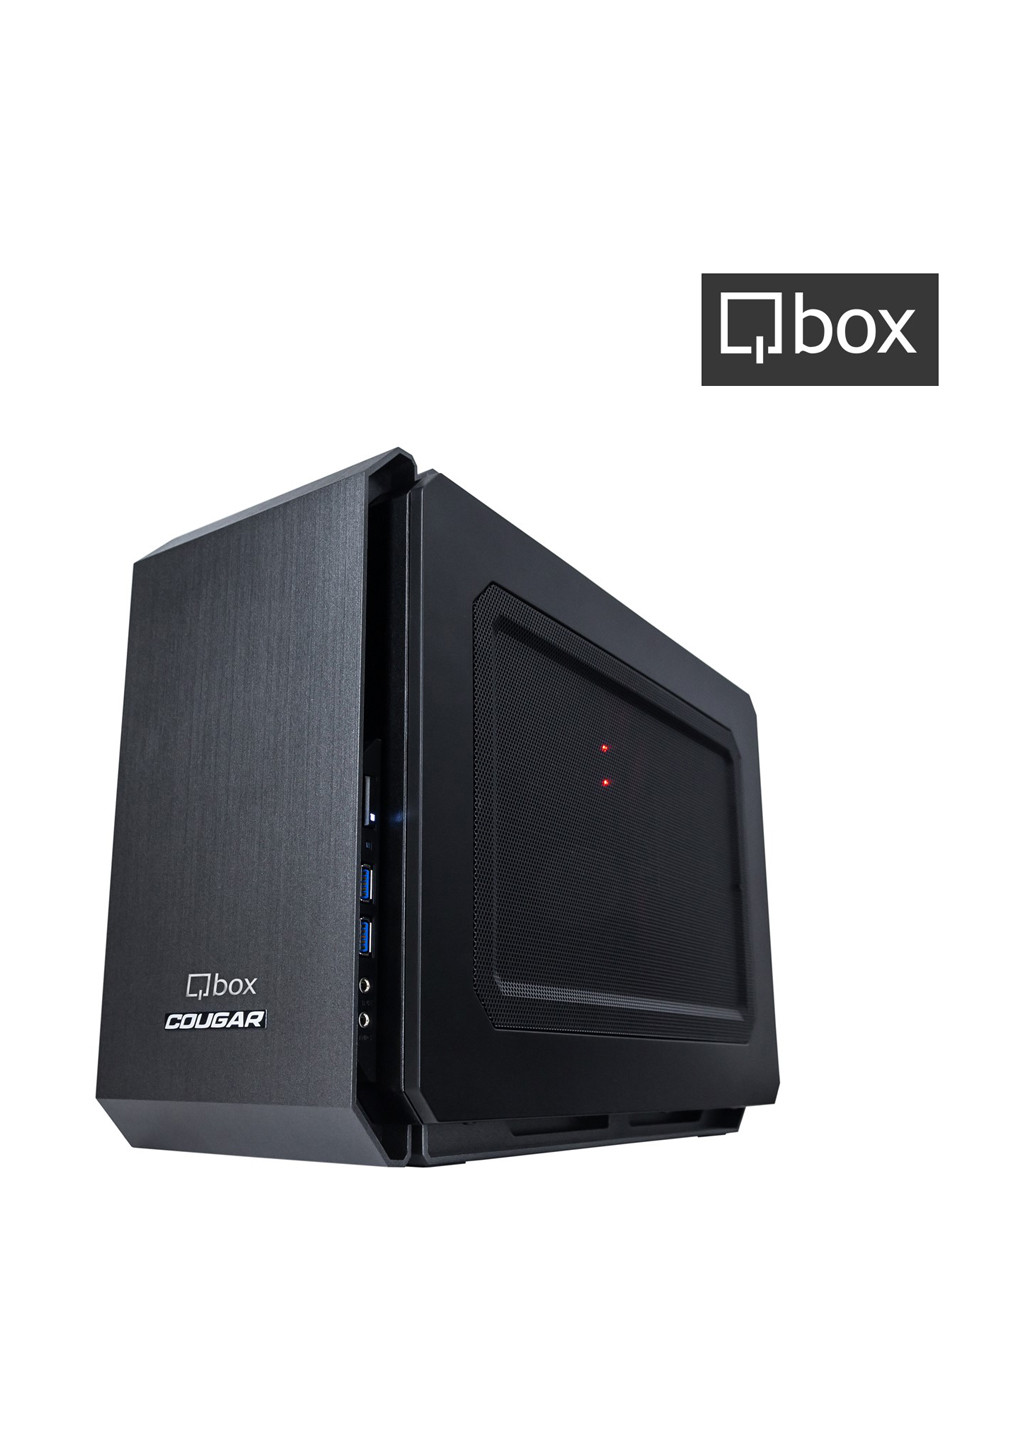 Компьютер I2606 Qbox qbox i2606 (131396737)